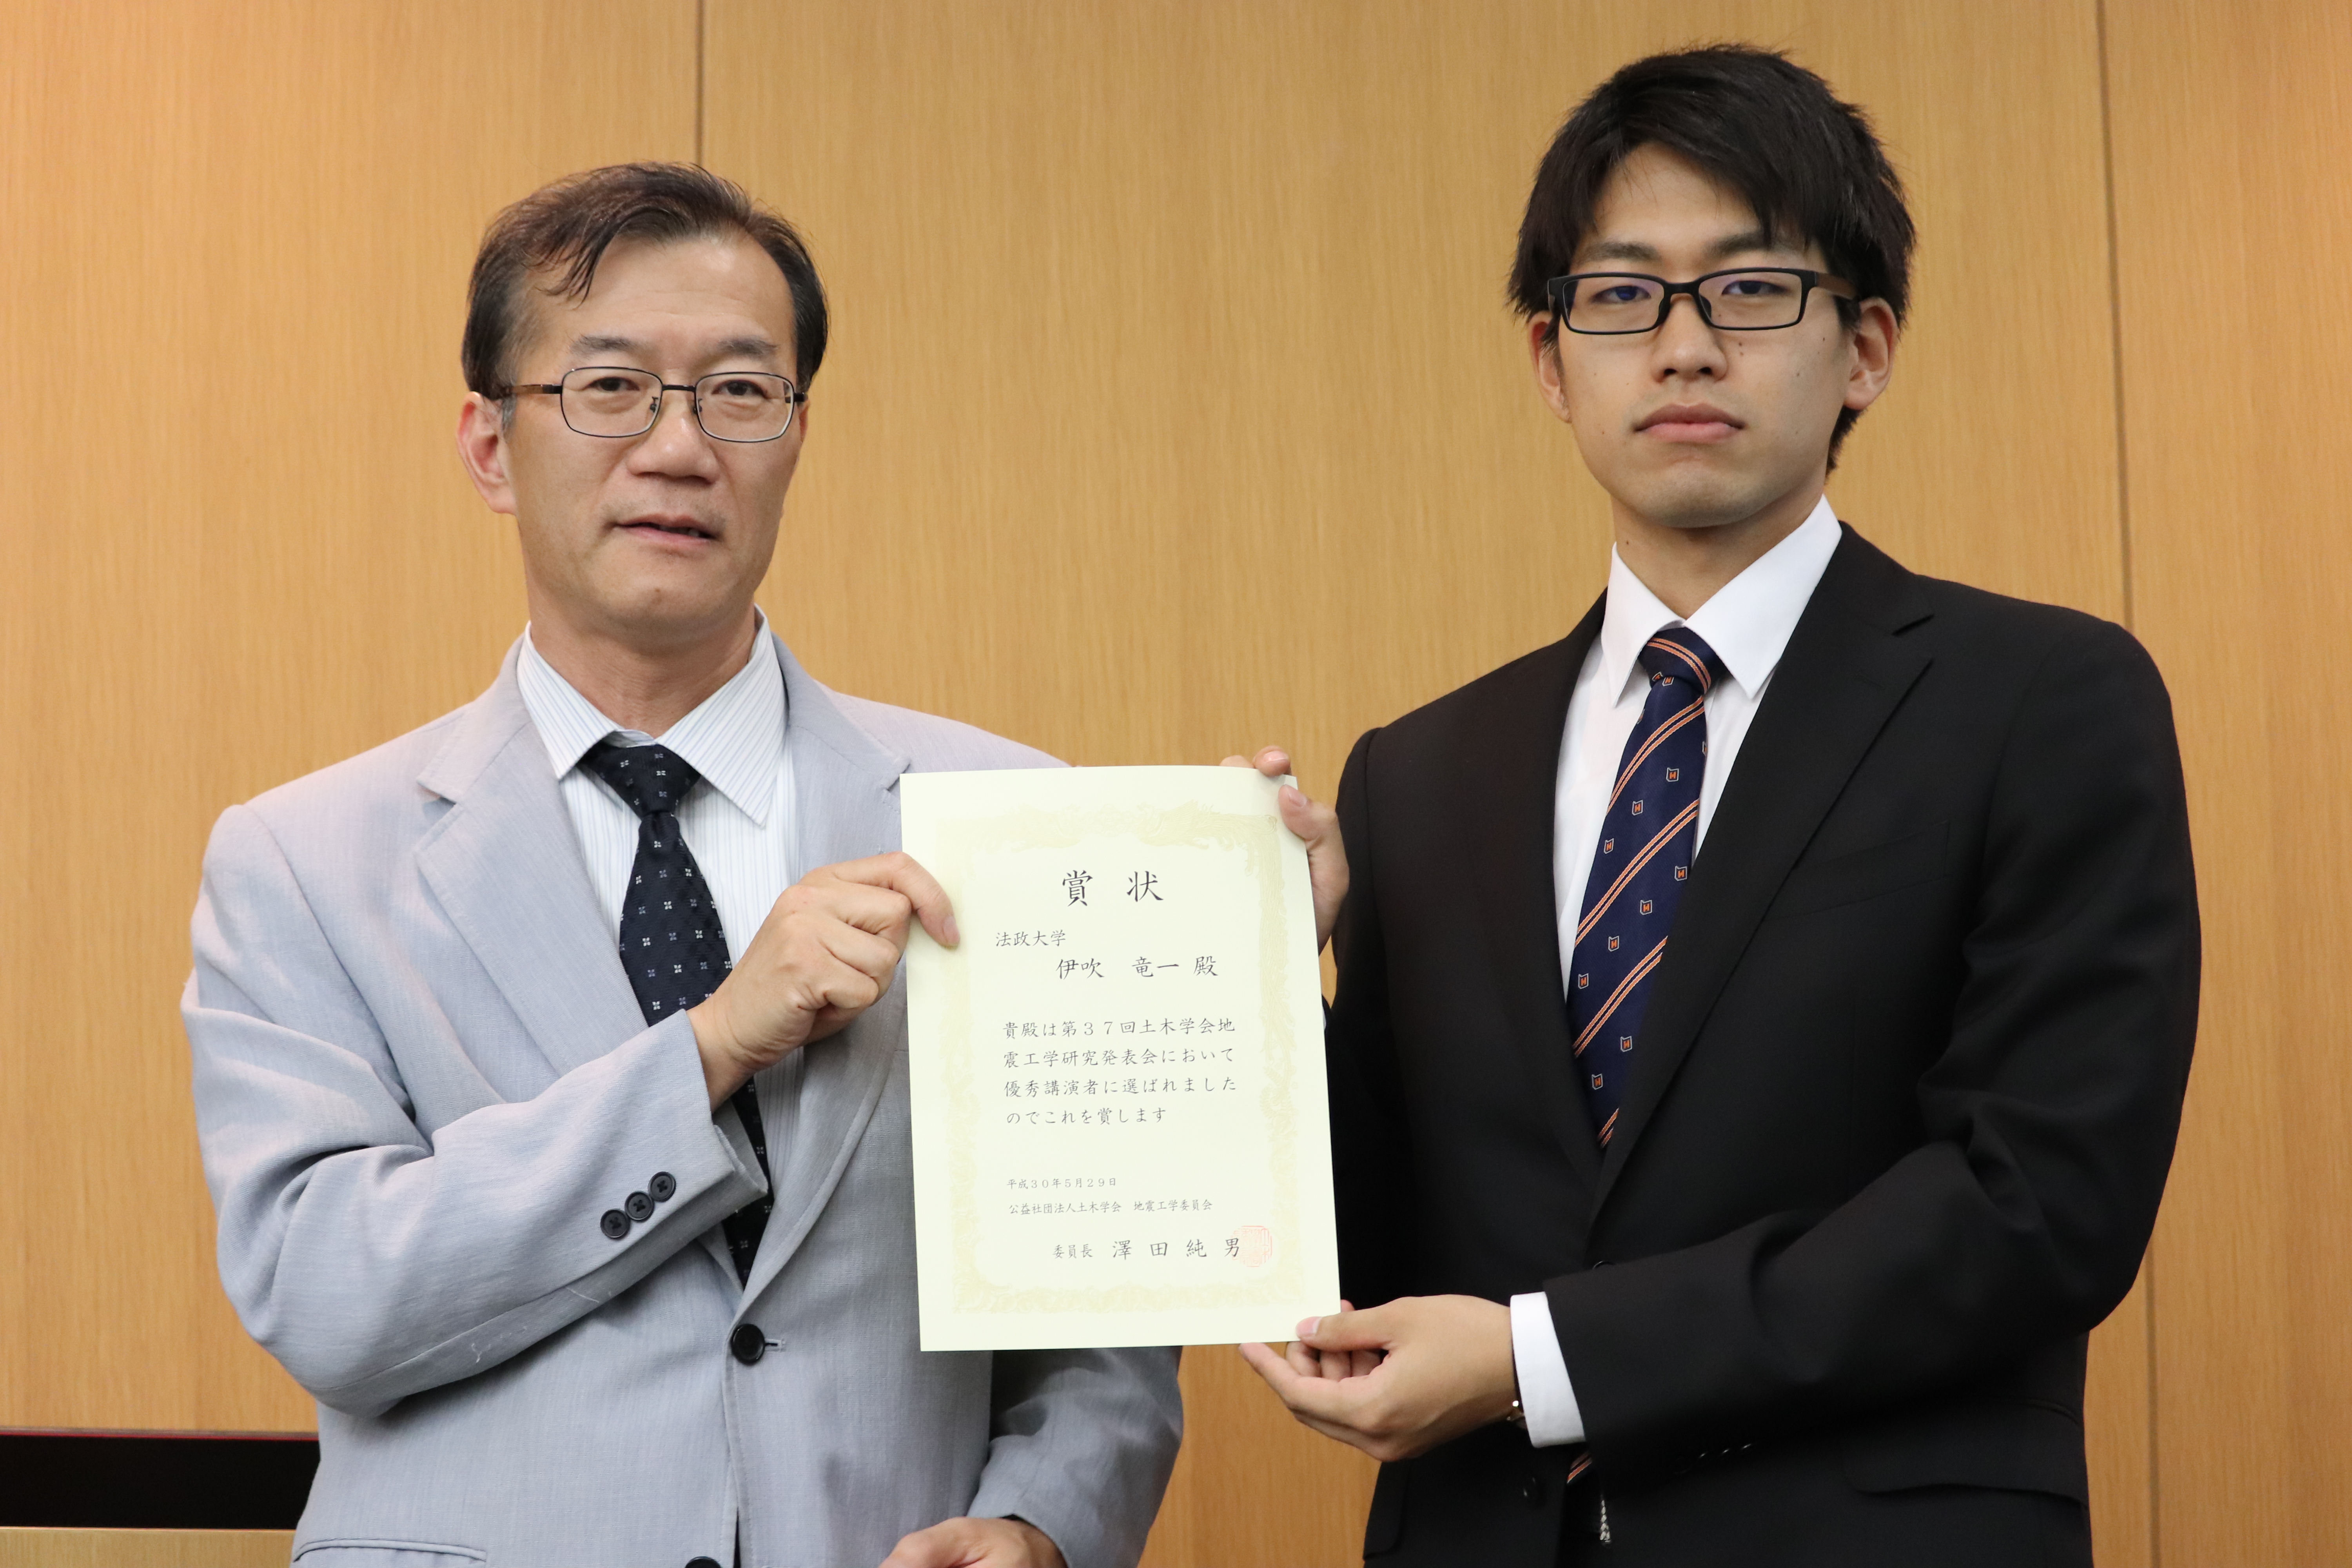 地震工学委員会 澤田純男委員長（左）と本学のネクタイをつけた伊吹竜一さん（右）